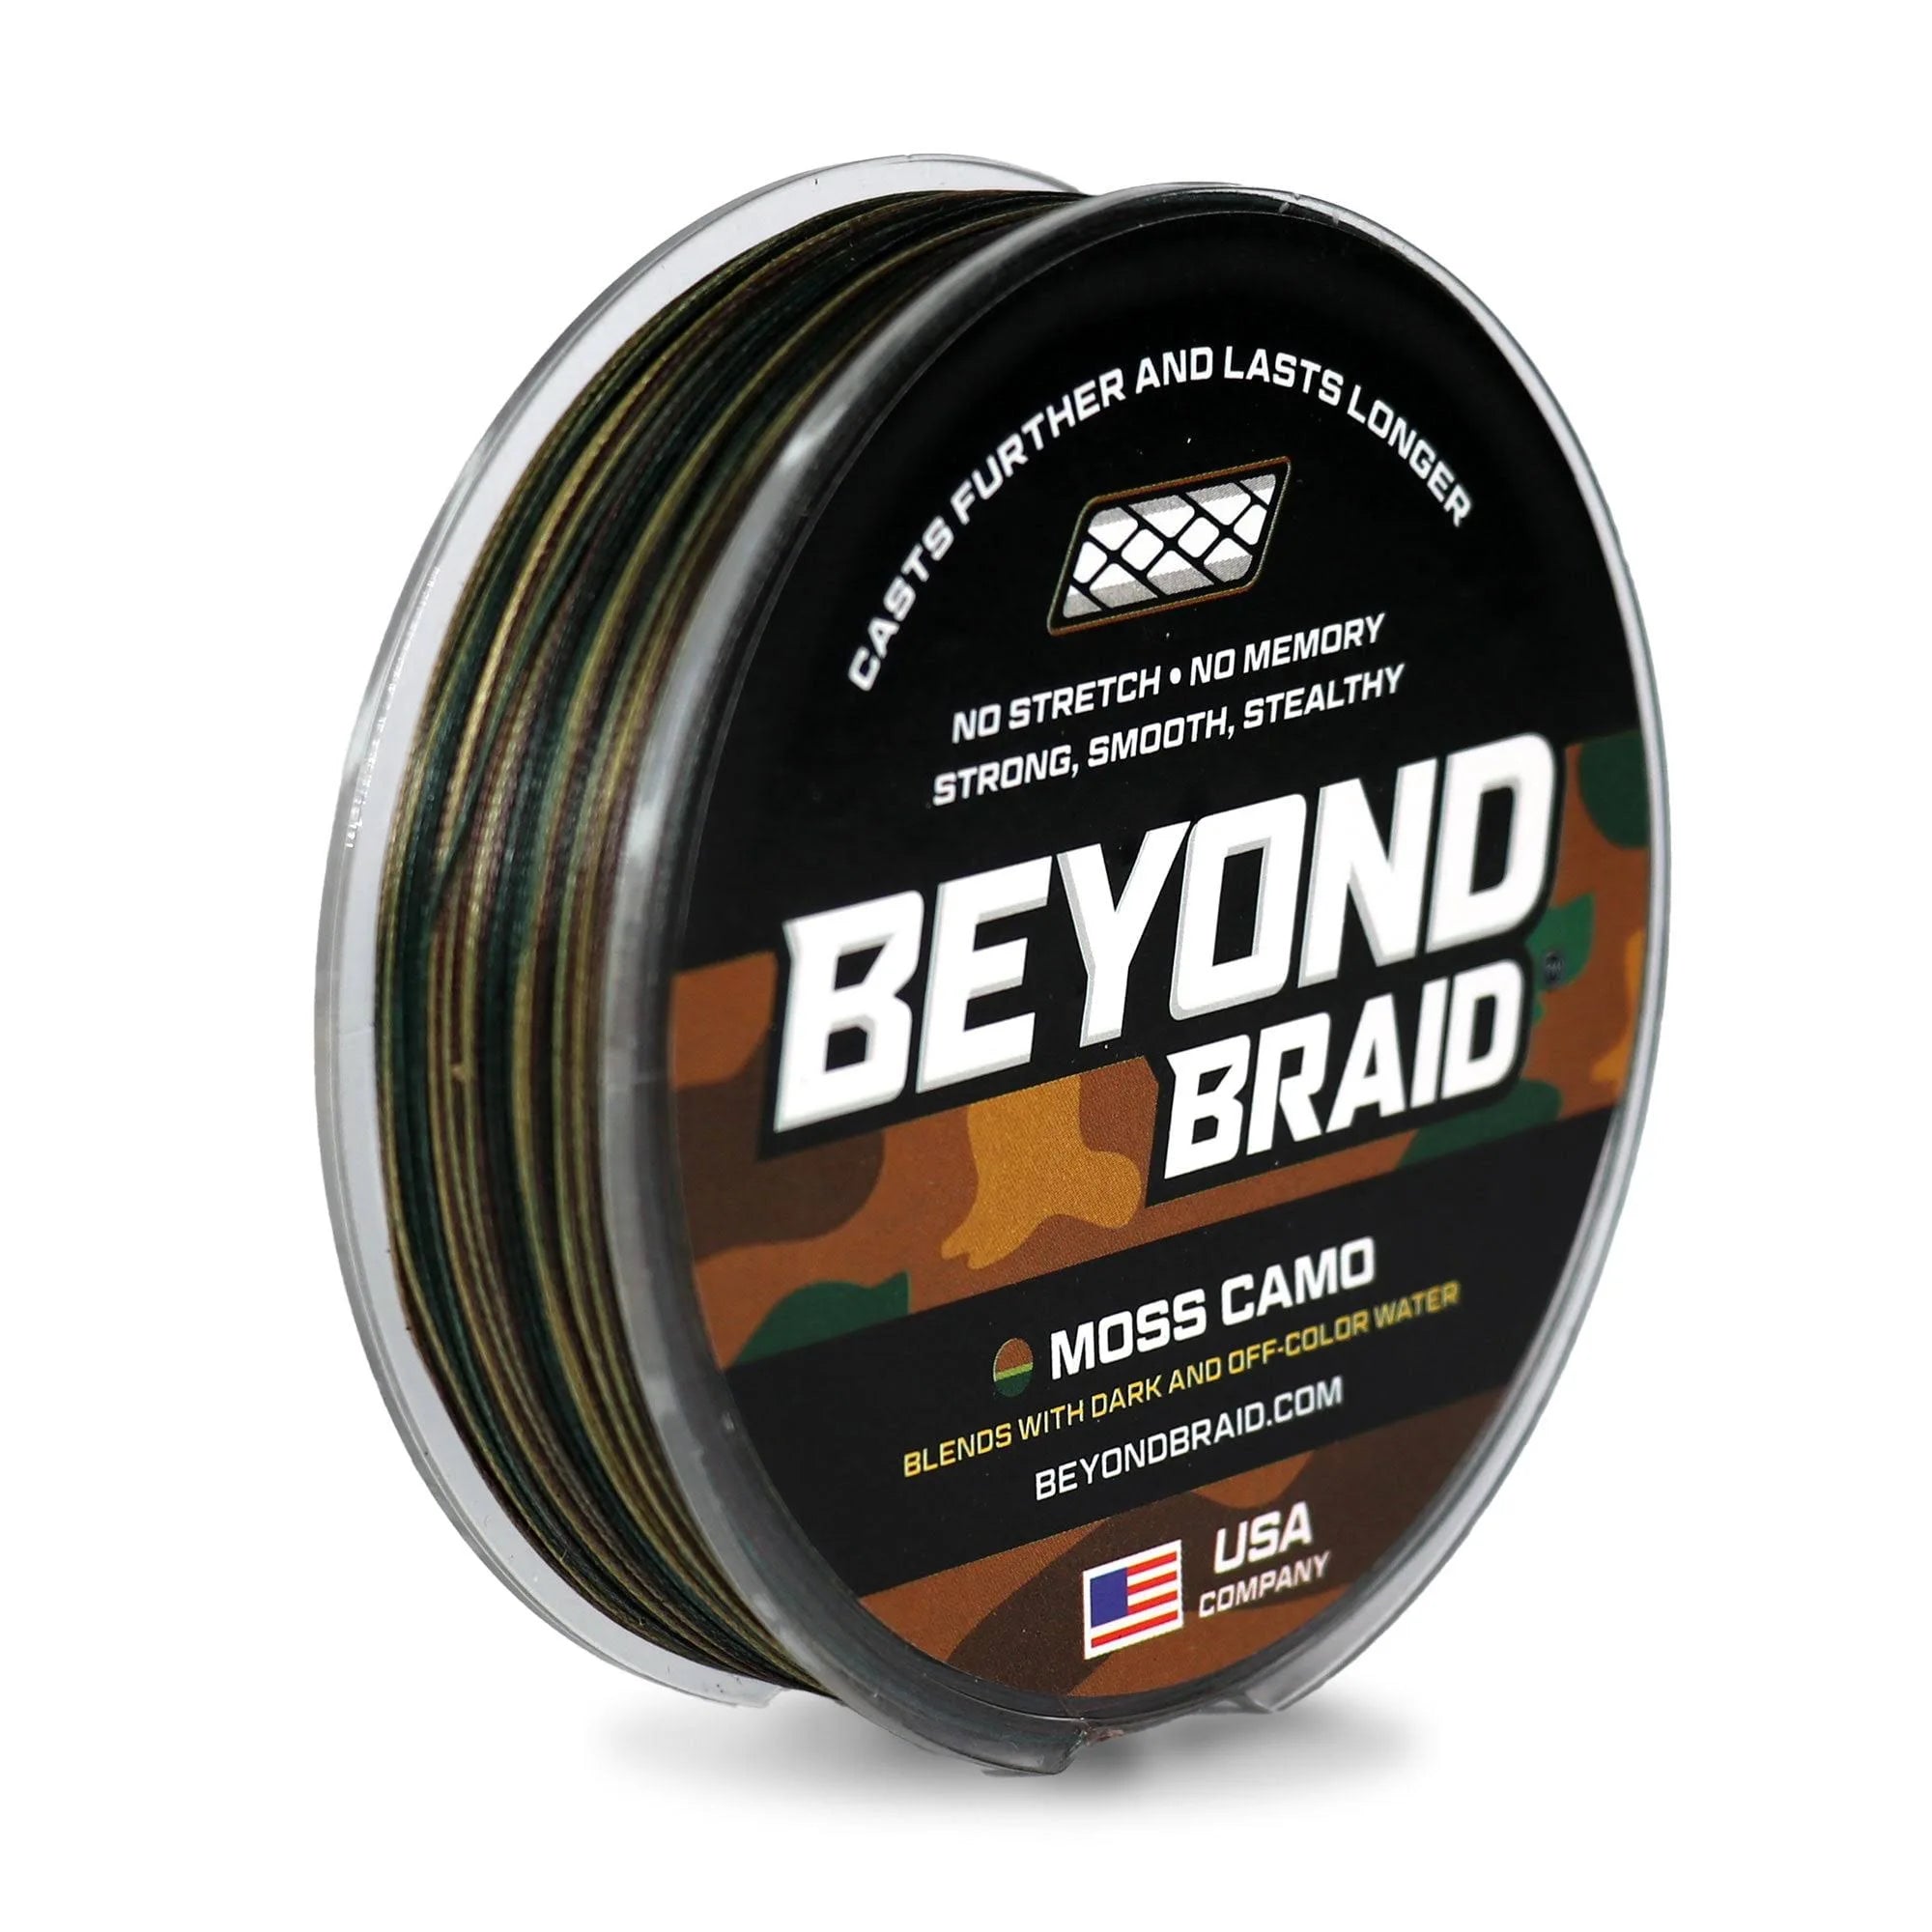 Beyond Braid Braided Fishing Line